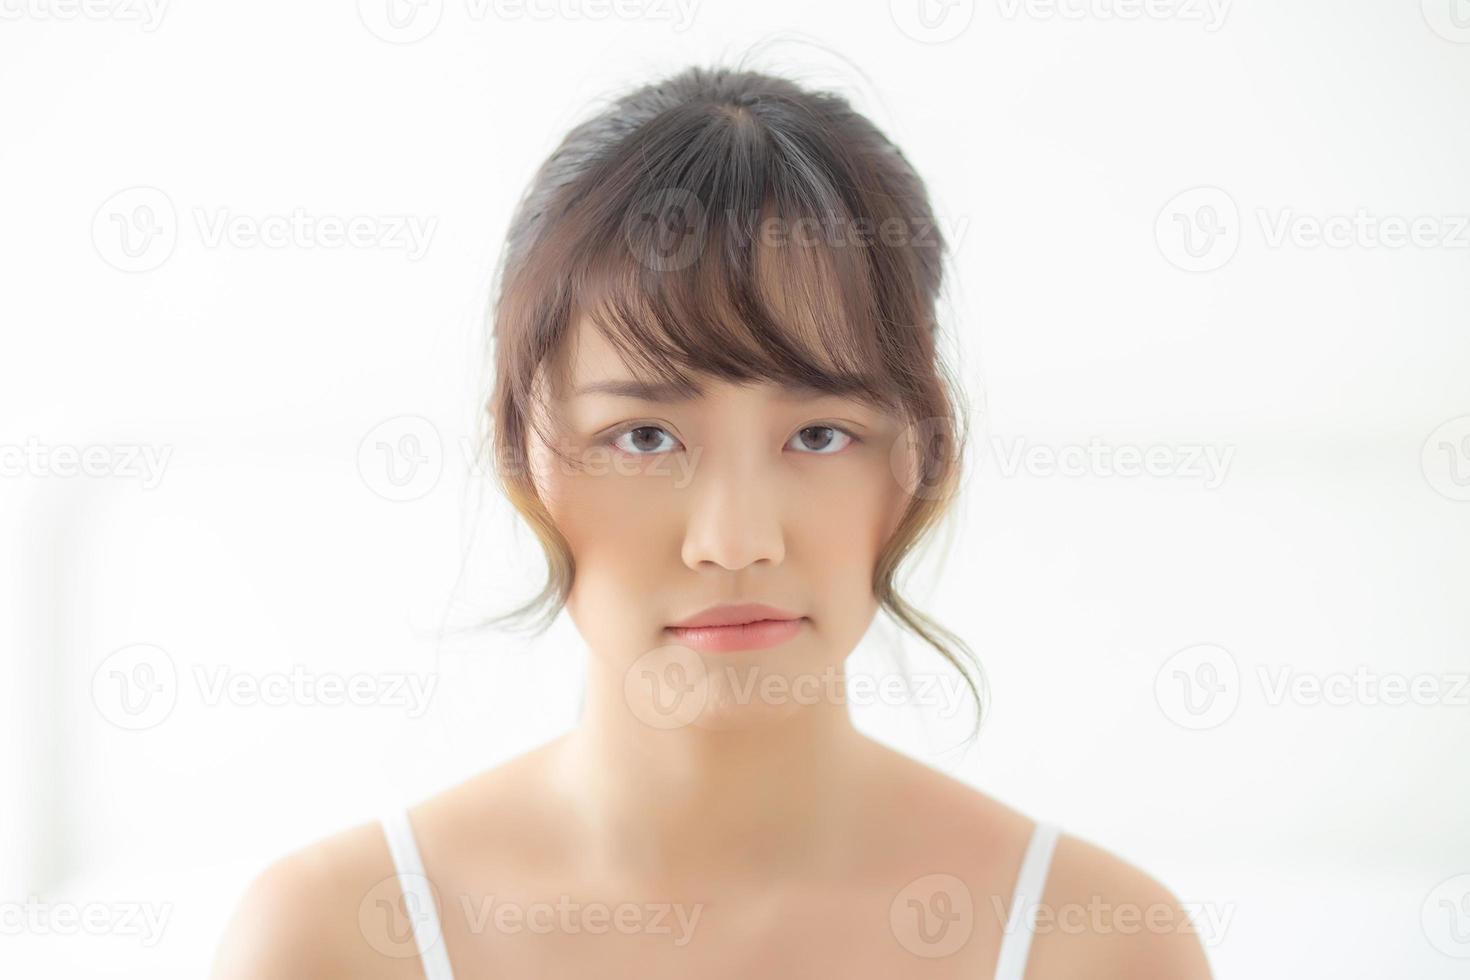 hermoso retrato joven mujer asiática que se preocupa infeliz y molesta por la piel problemática, belleza asia chica sintiendo expresión y emoción triste y mala, mujer con problemas y disgustada. foto